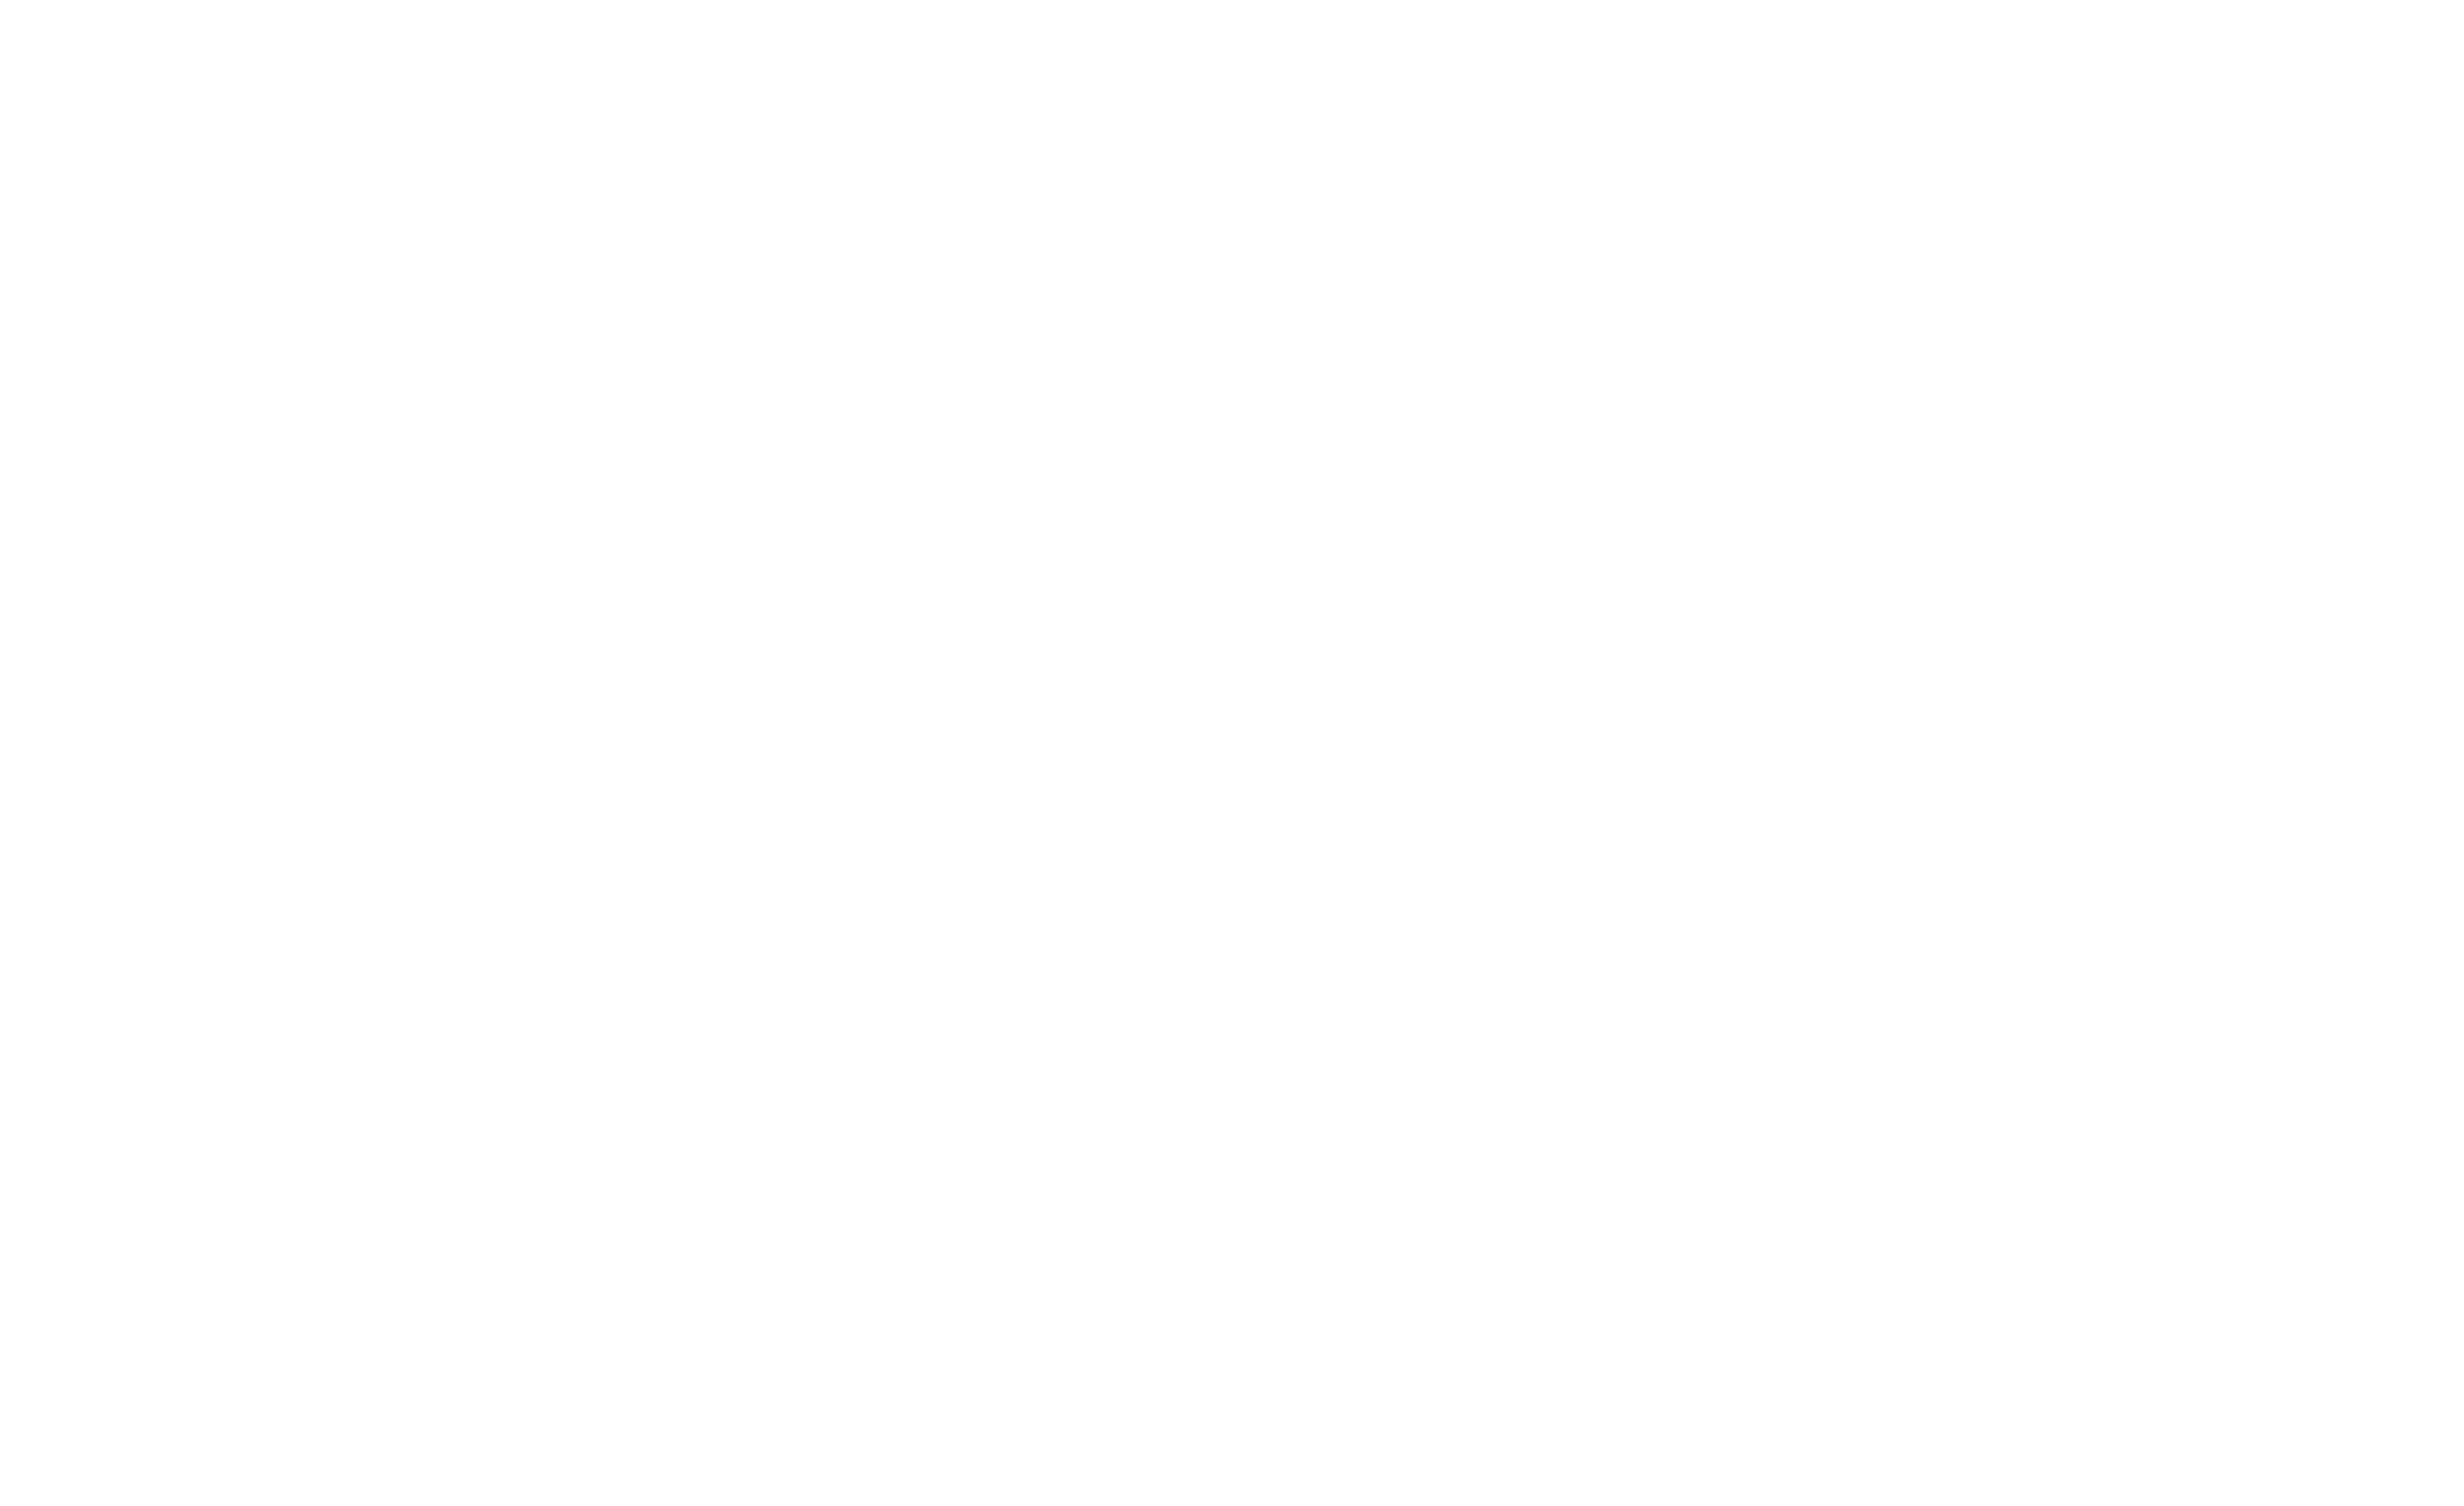 Kino London Short Film Festival